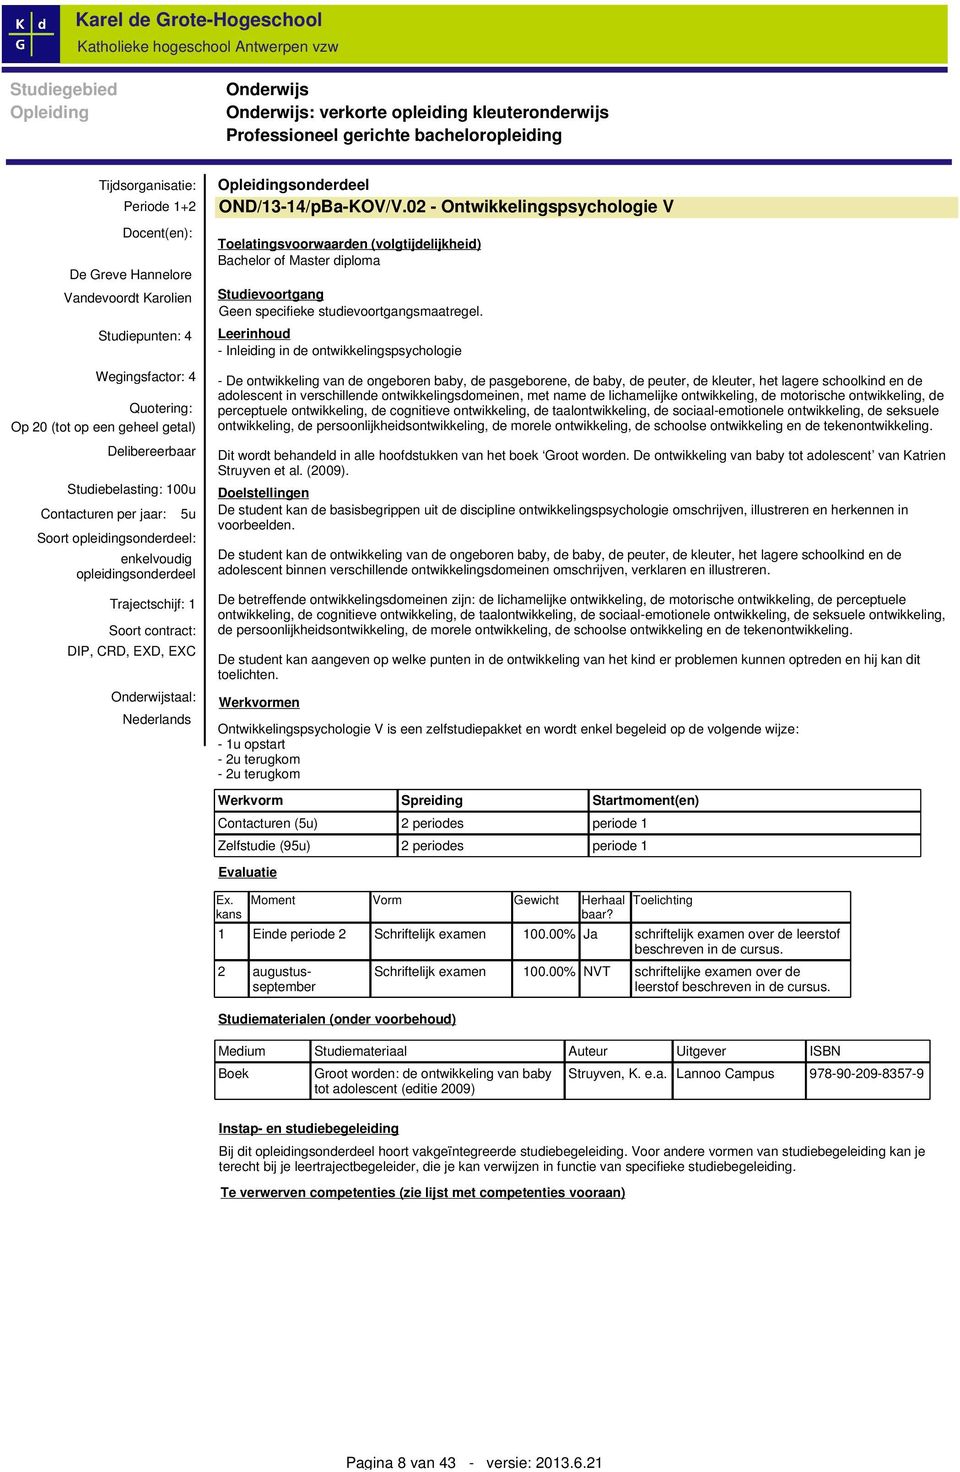 opleidingsonderdeel Trajectschijf: 1 Soort contract: DIP, CRD, EXD, EXC Onderwijstaal: Nederlands Opleidingsonderdeel OND/13-14/pBa-KOV/V.